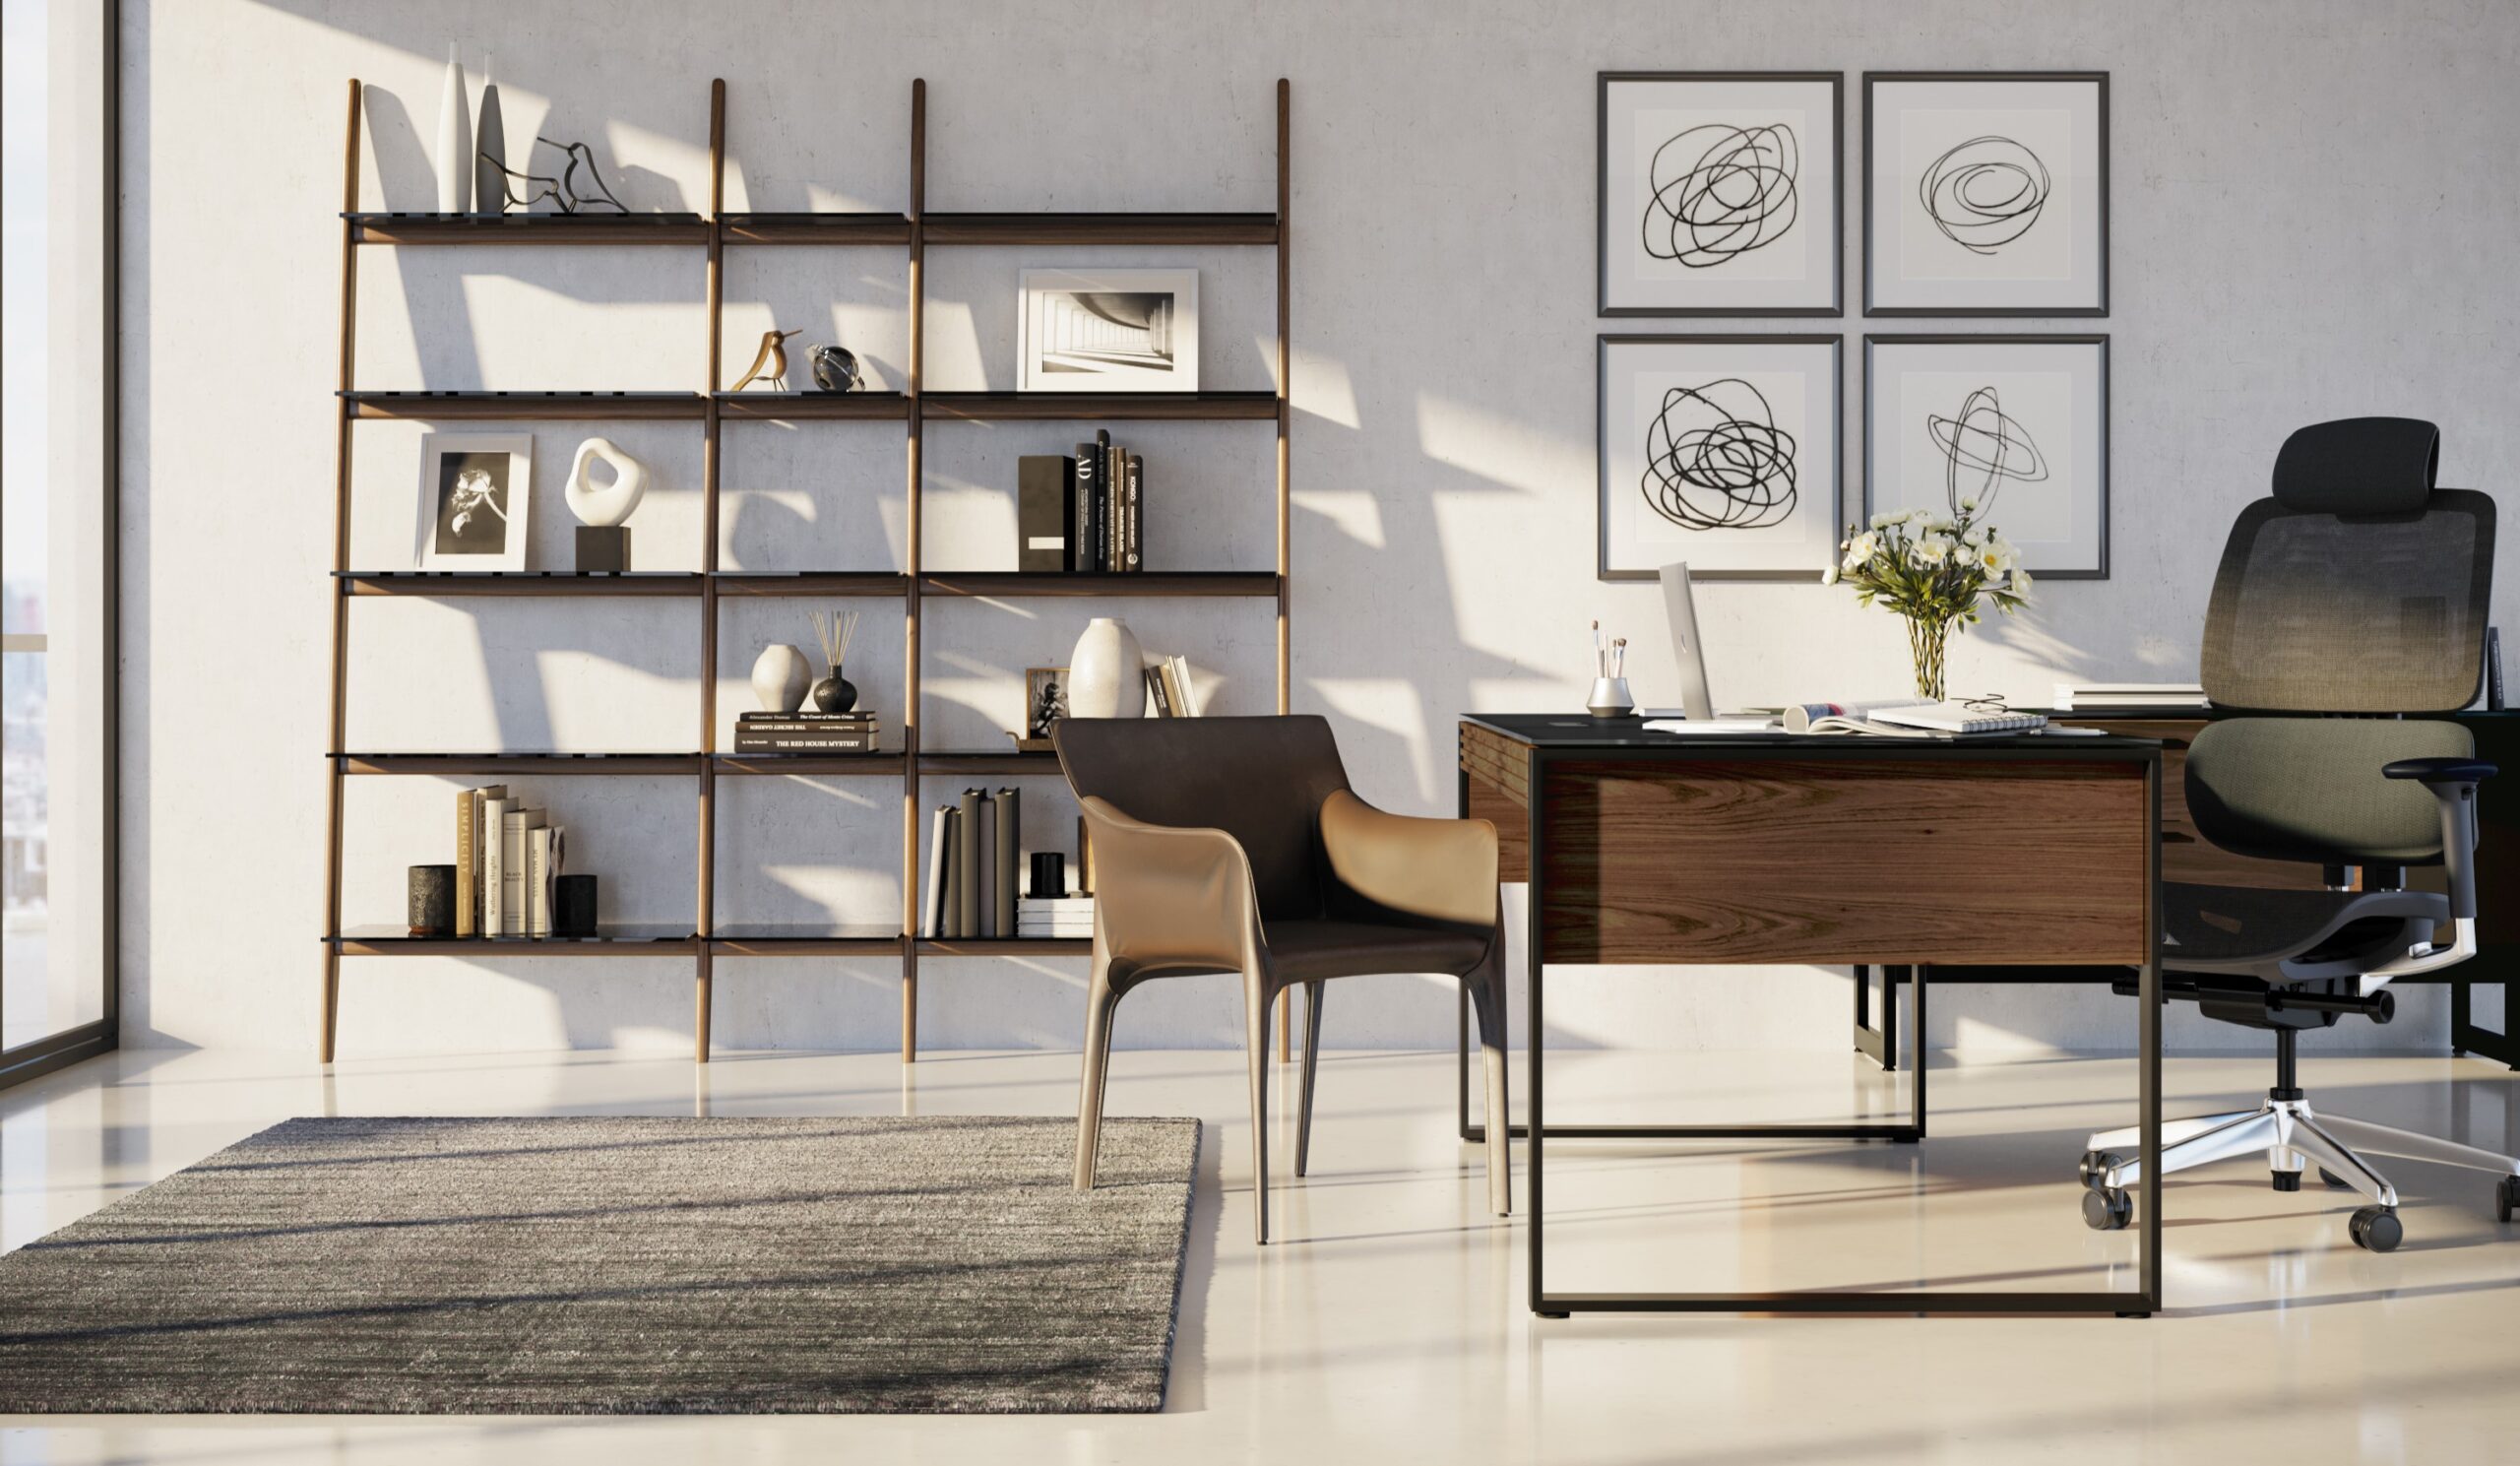 BDI Office environment with Stiletto shelf in walnut, Corridor Desk, Voca chair, and Corridor credenza